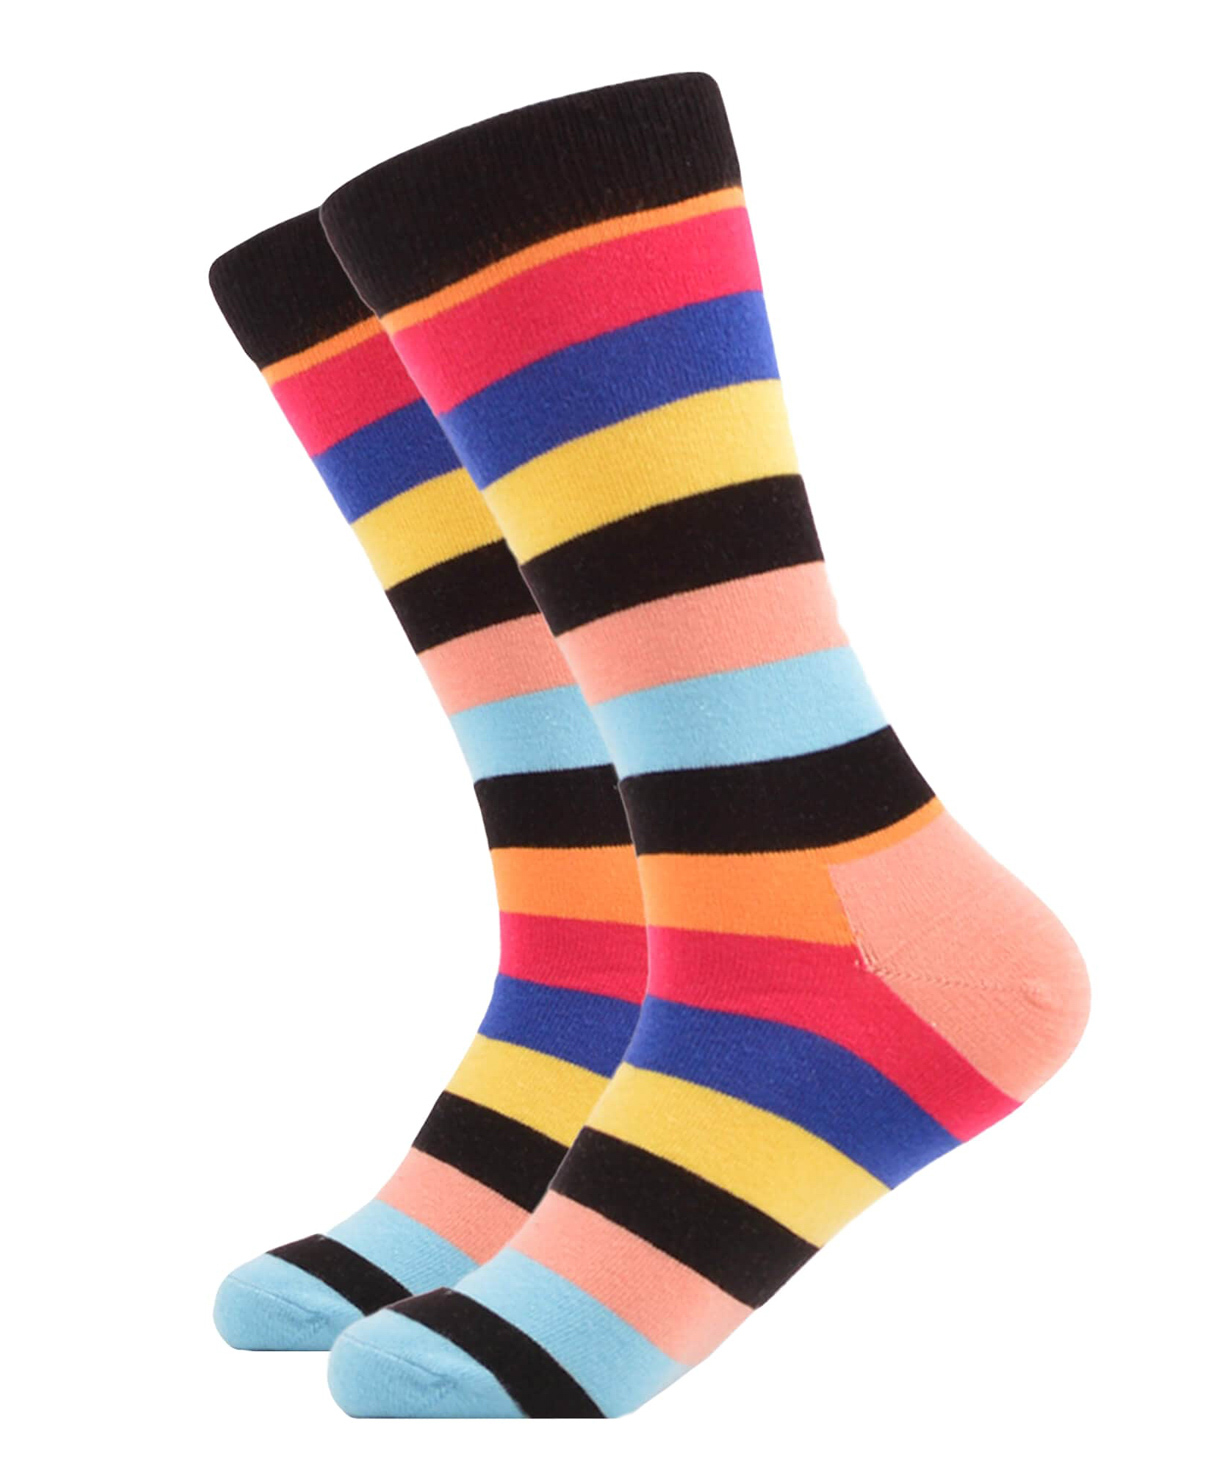 Գուլպաներ «Zeal Socks» գույներ №6